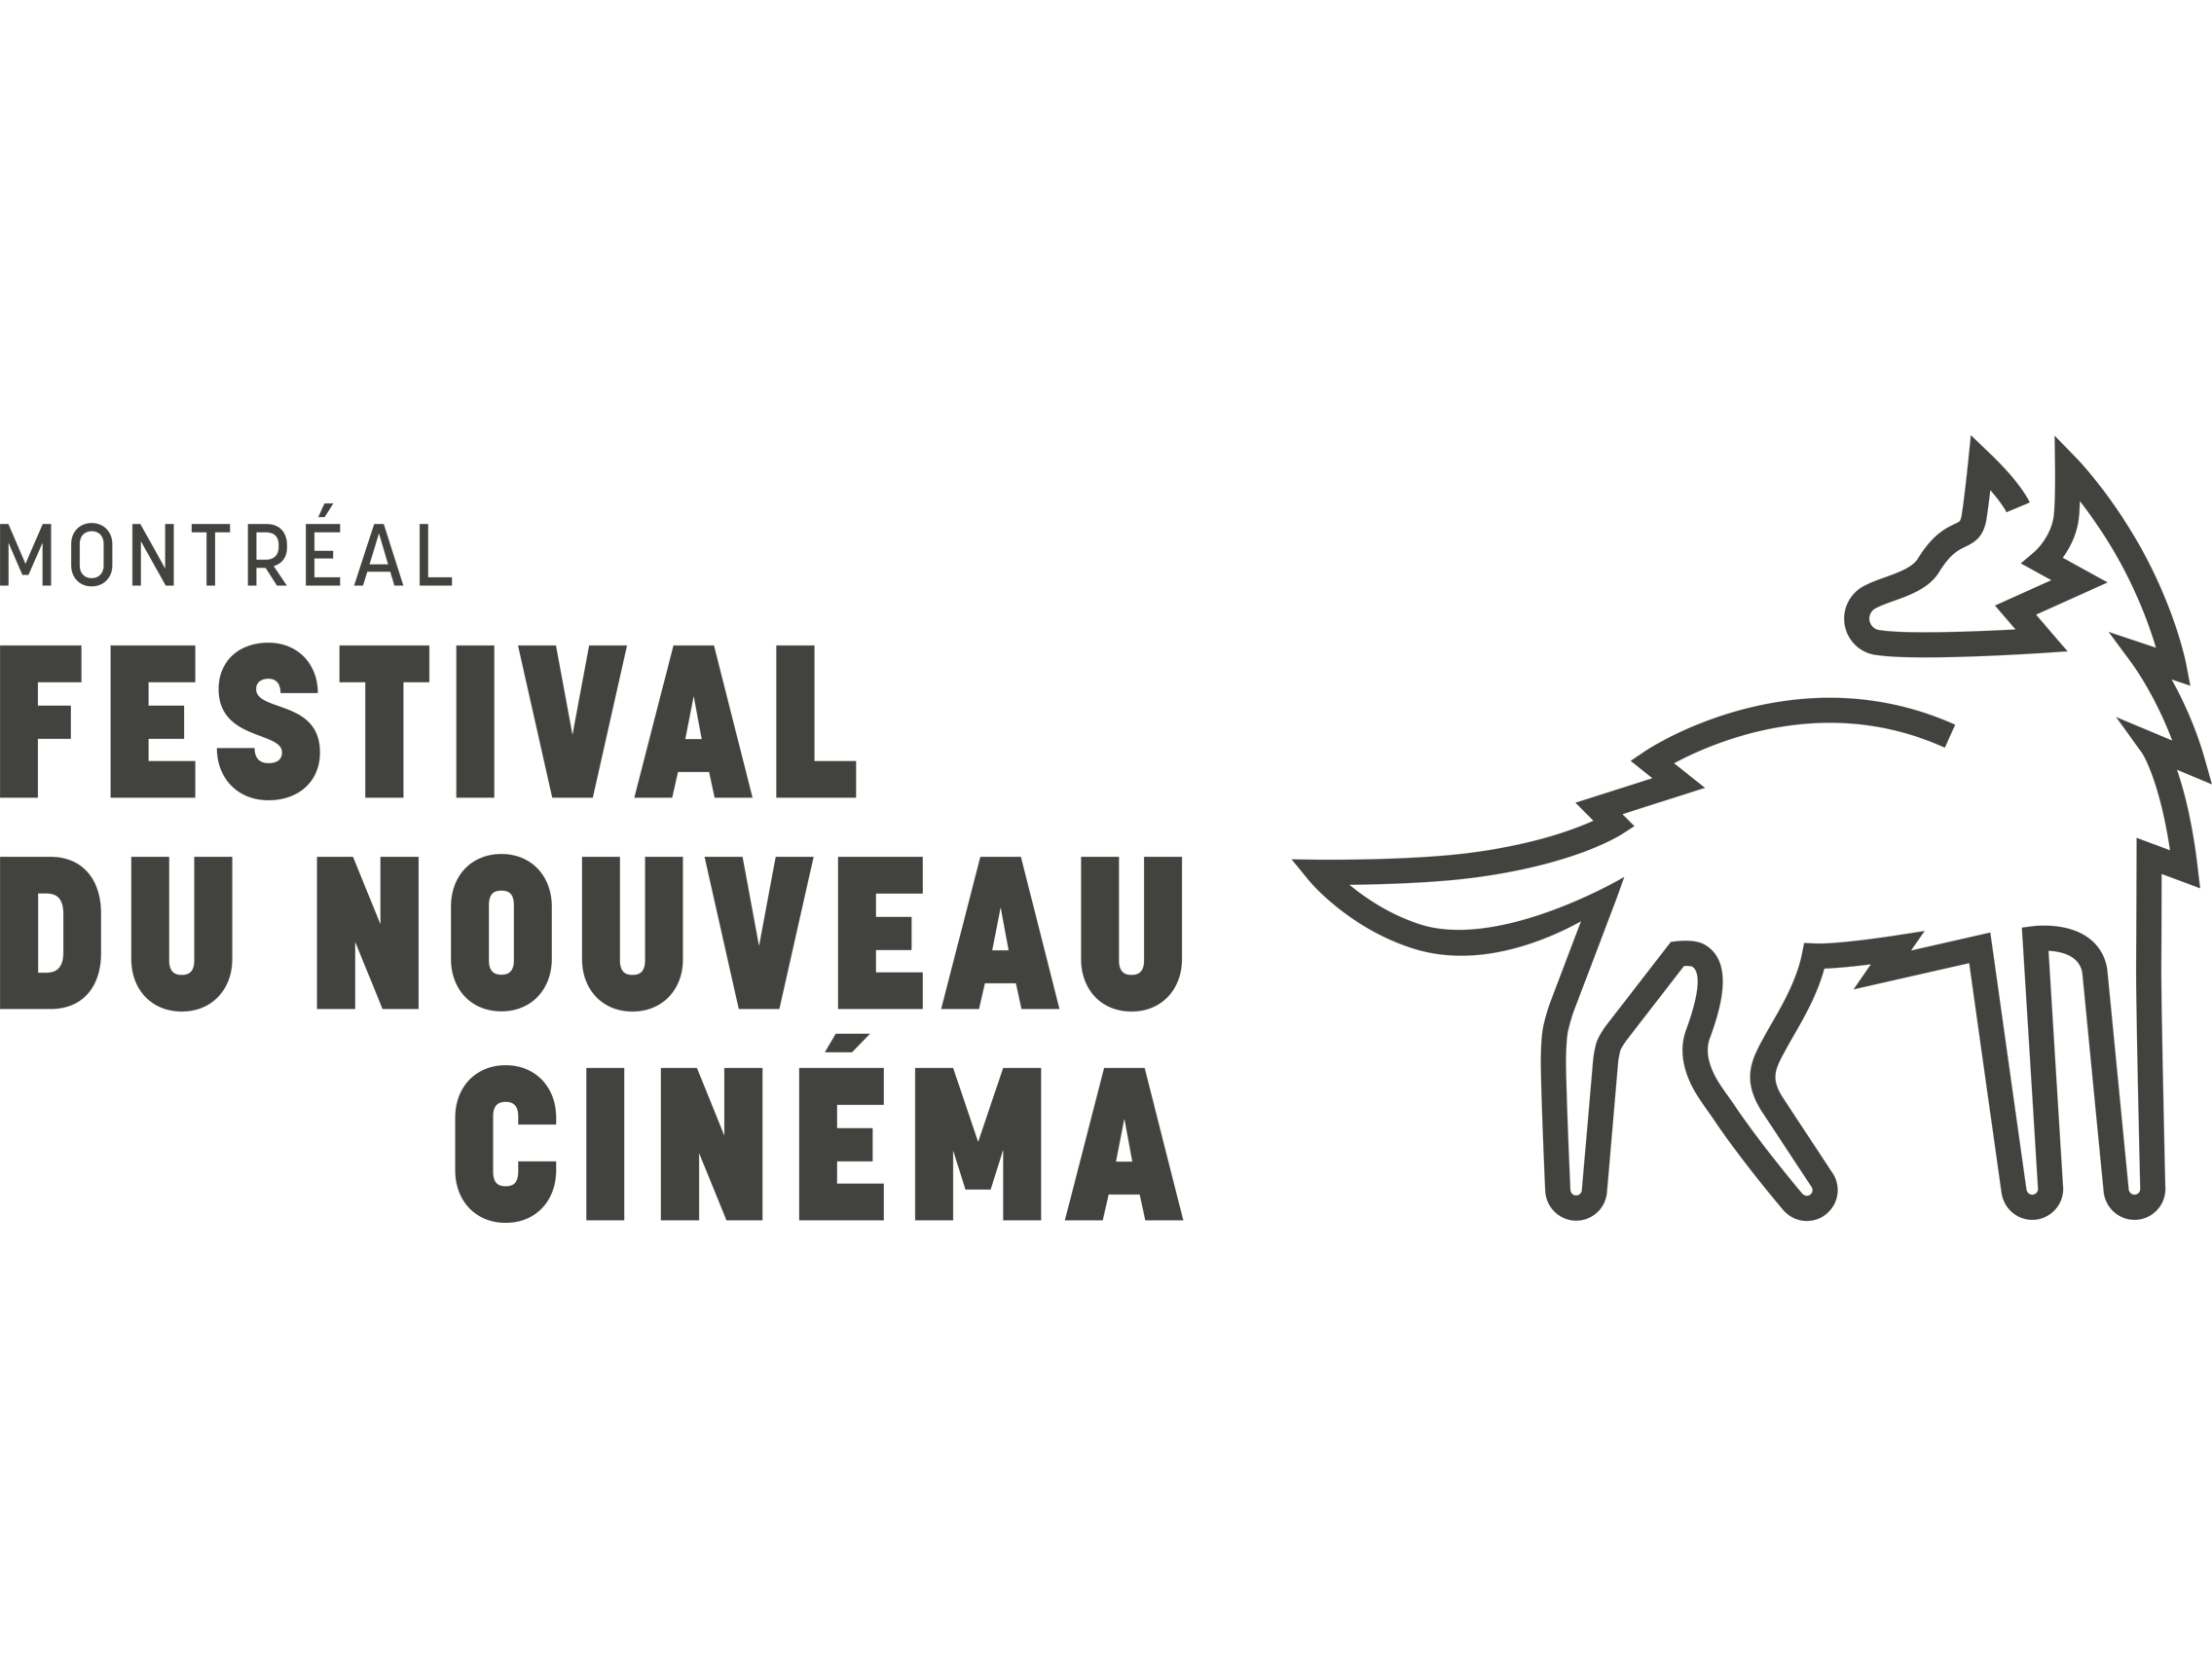 Festival-du-nouveau-cinéma-logo-and-wordmark.png